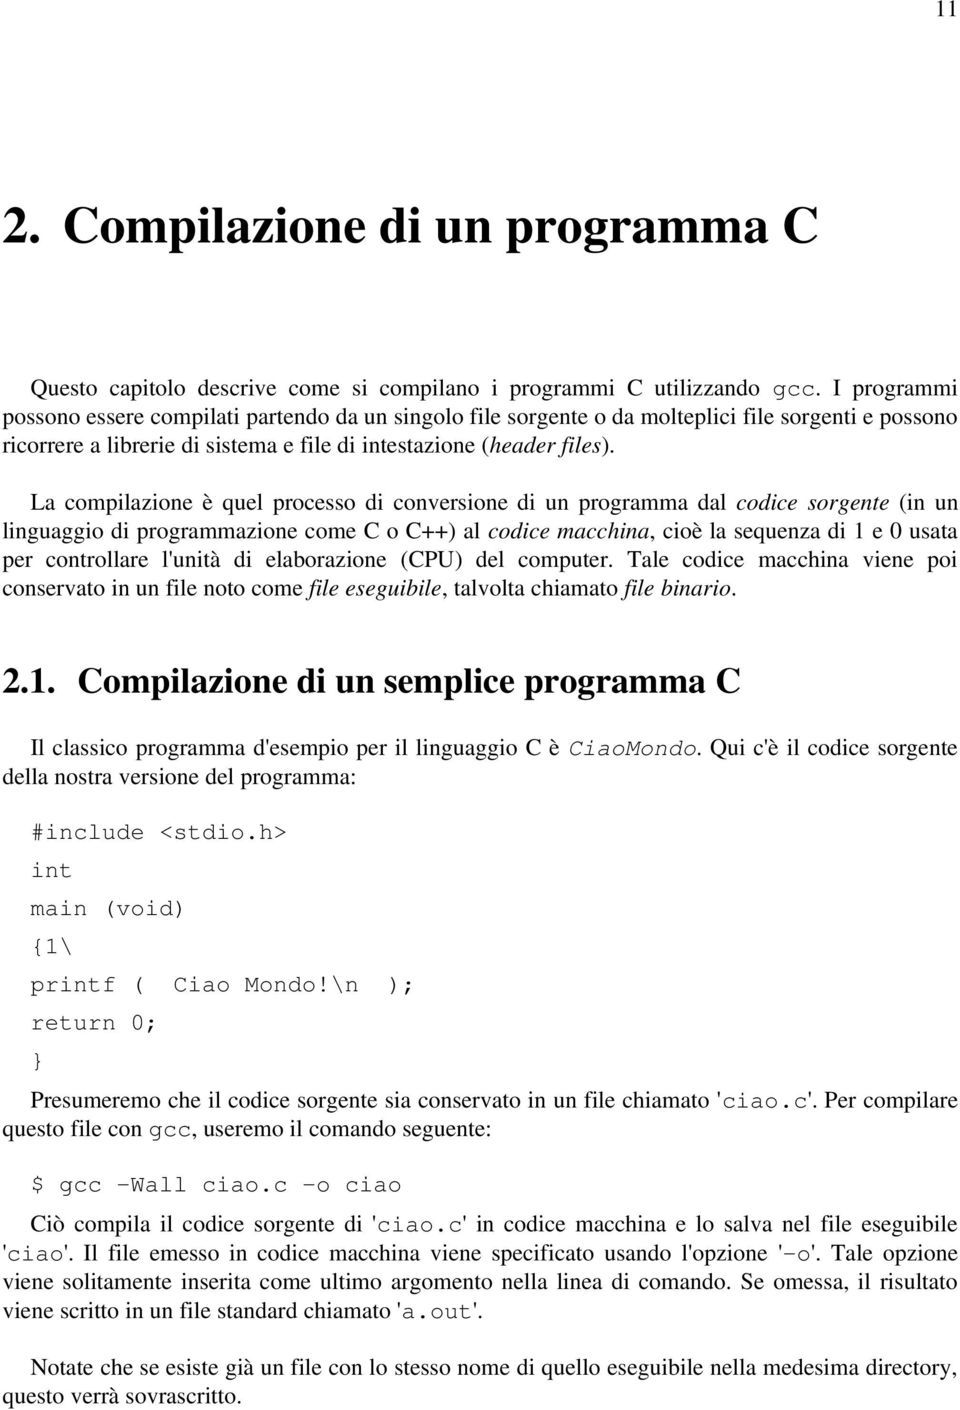 La compilazione è quel processo di conversione di un programma dal codice sorgente (in un linguaggio di programmazione come C o C++) al codice macchina, cioè la sequenza di 1 e 0 usata per